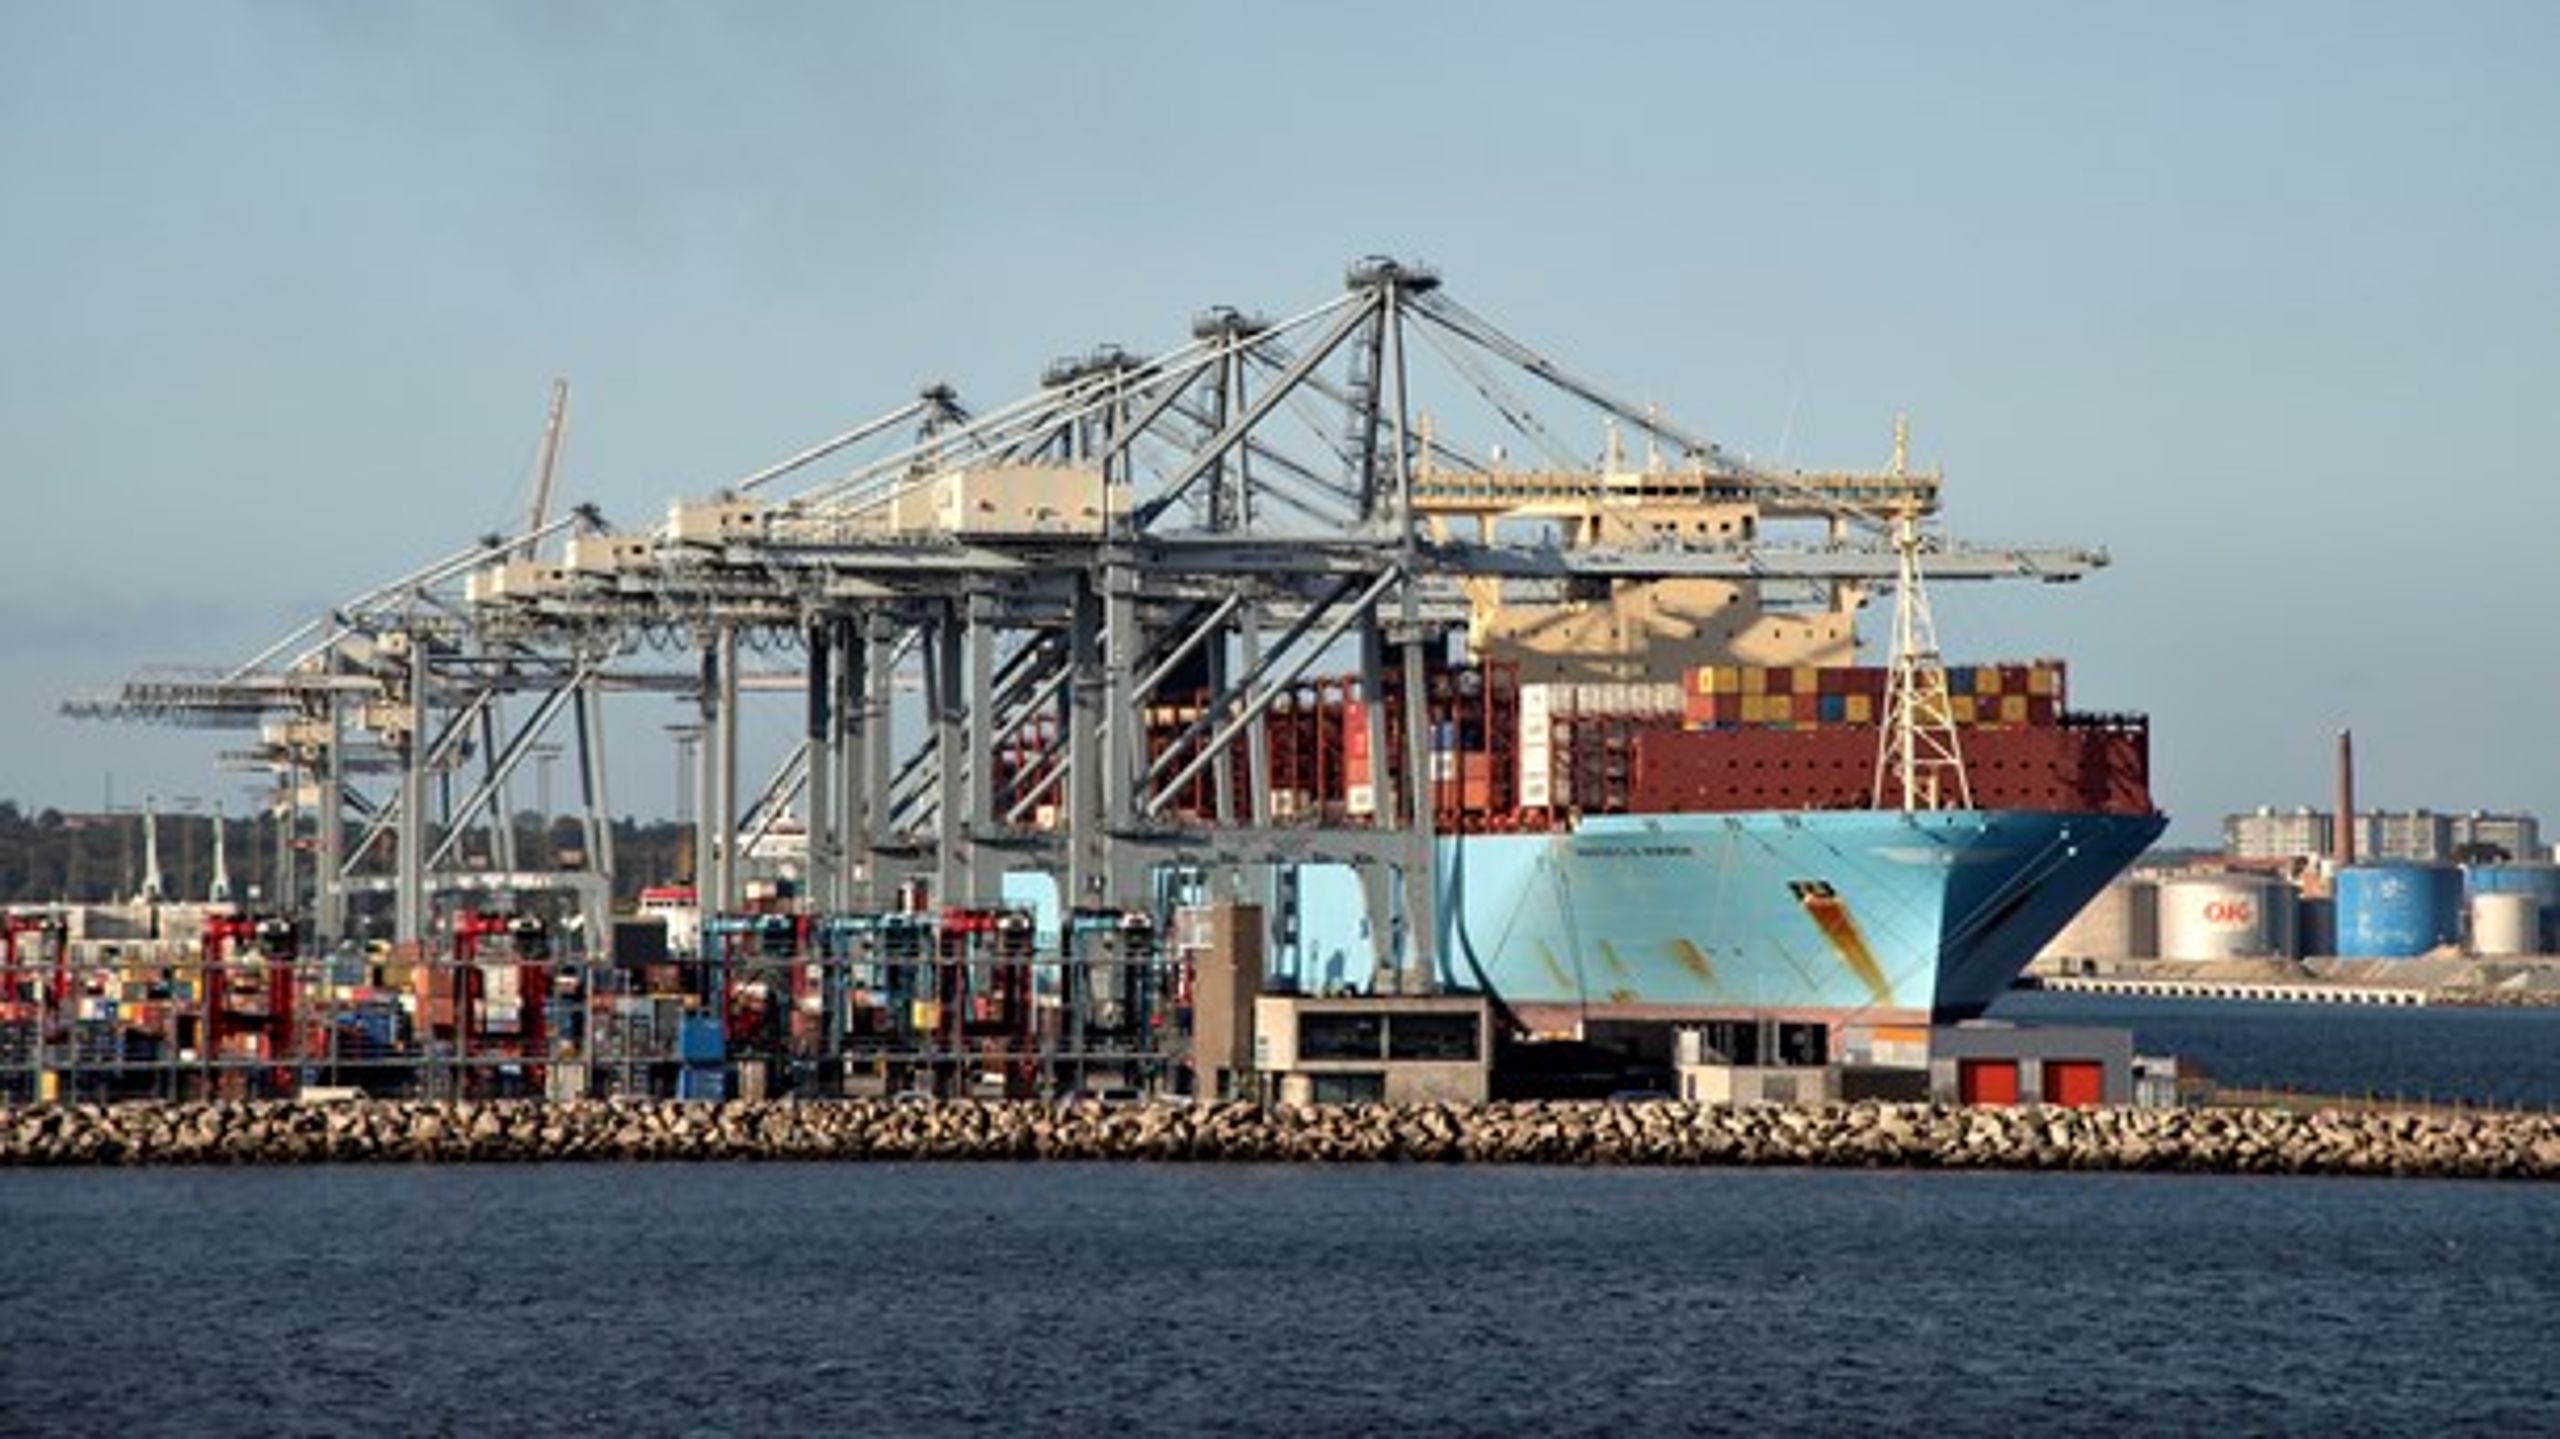 Danske erhvervshavne håndterer omkring 80 procent af al import/eksport i Danmark målt i tons. Havnene er en vital del af dansk infrastruktur, skriver Tine Kirk Pedersen.